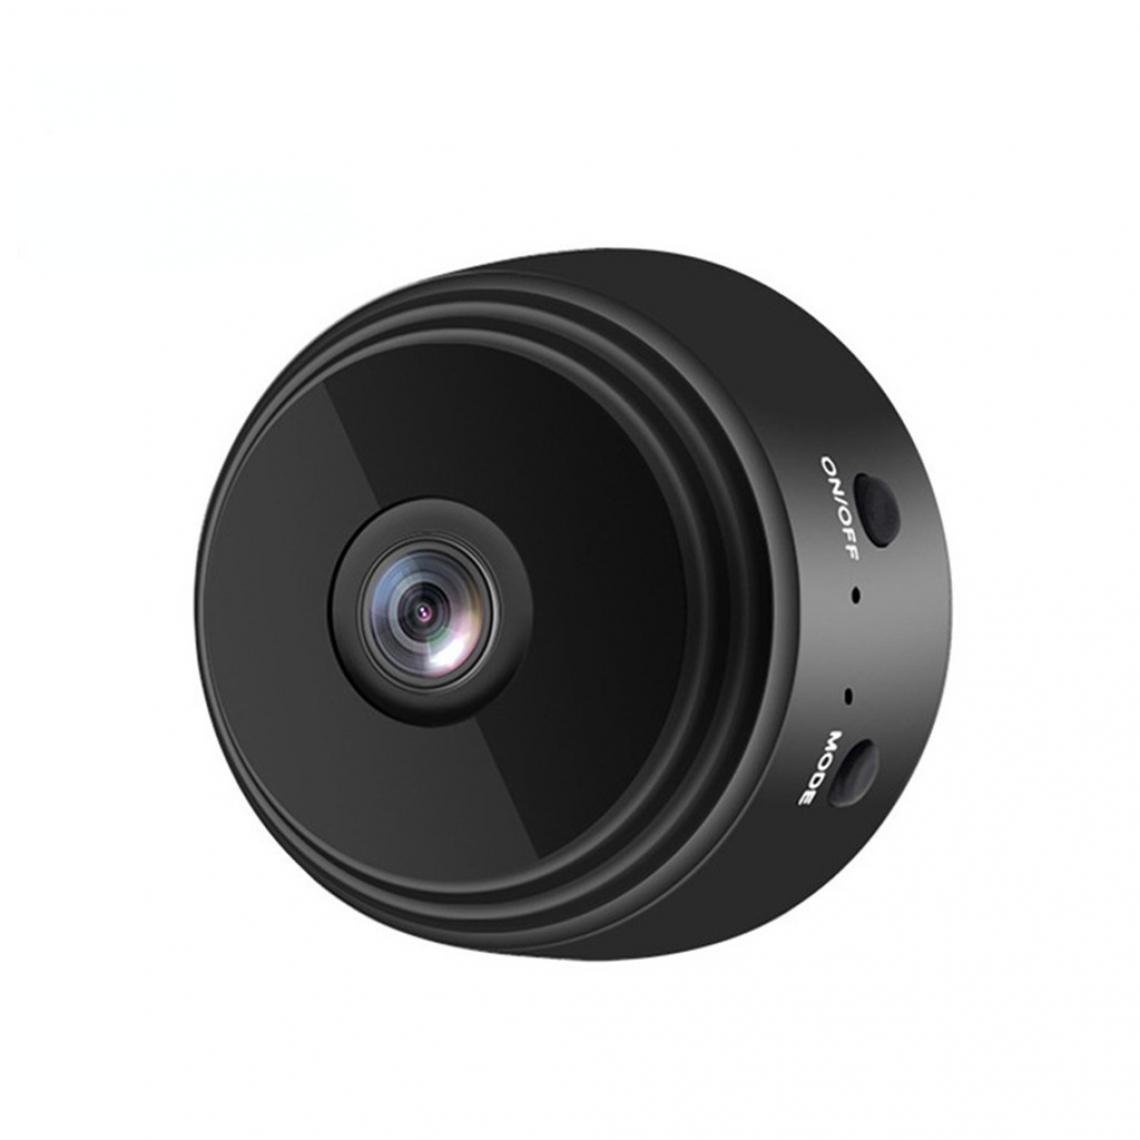 Generic - Caméra HD intelligente sans fil A9 Caméra Web de surveillance à distance WiFi - Webcam